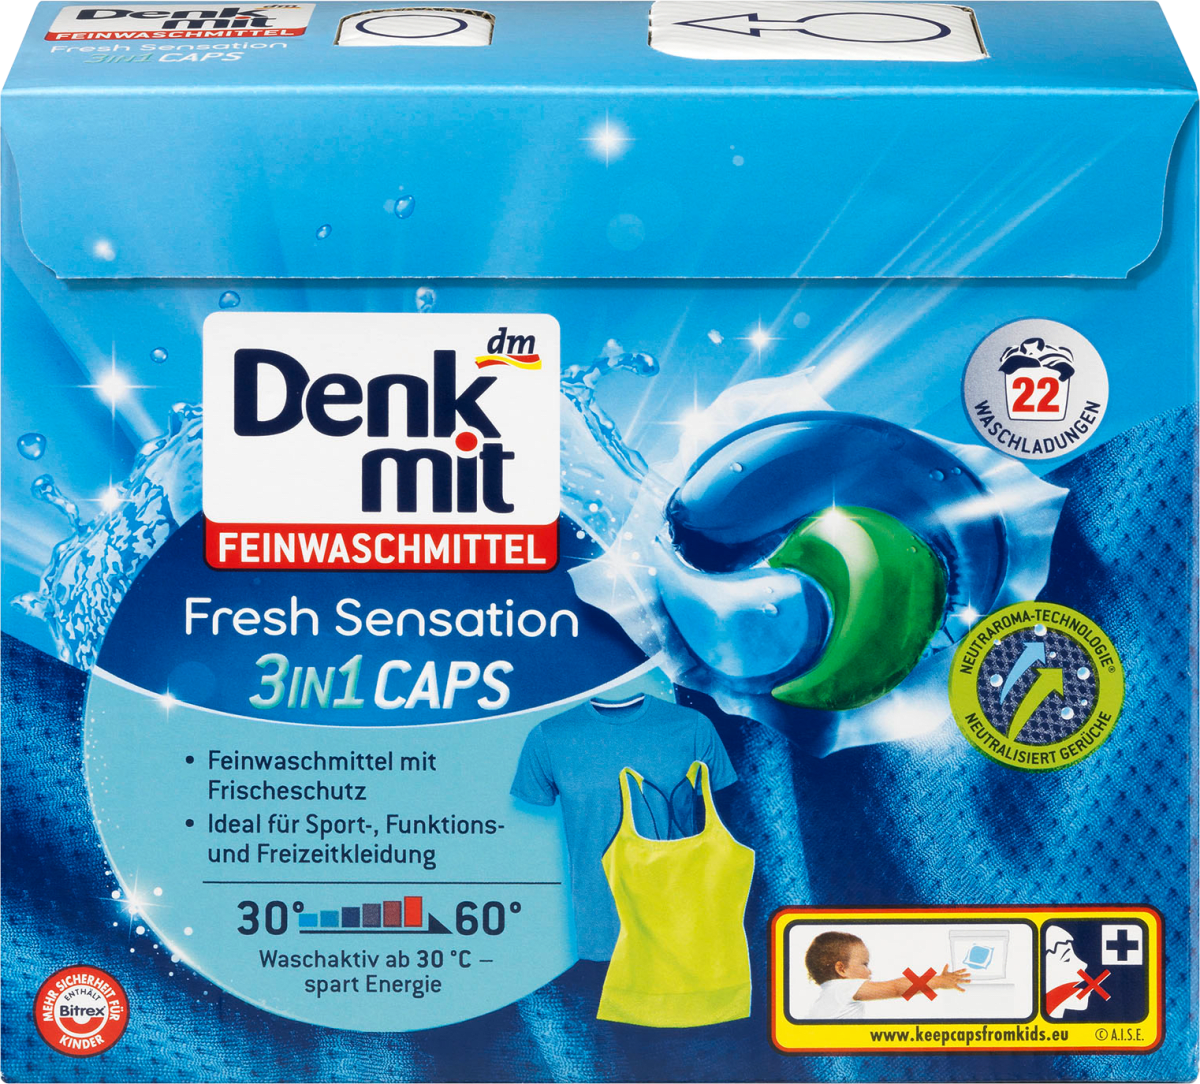 Feinwaschmittel 3in1 Caps Fresh Sensation, 22 Wl